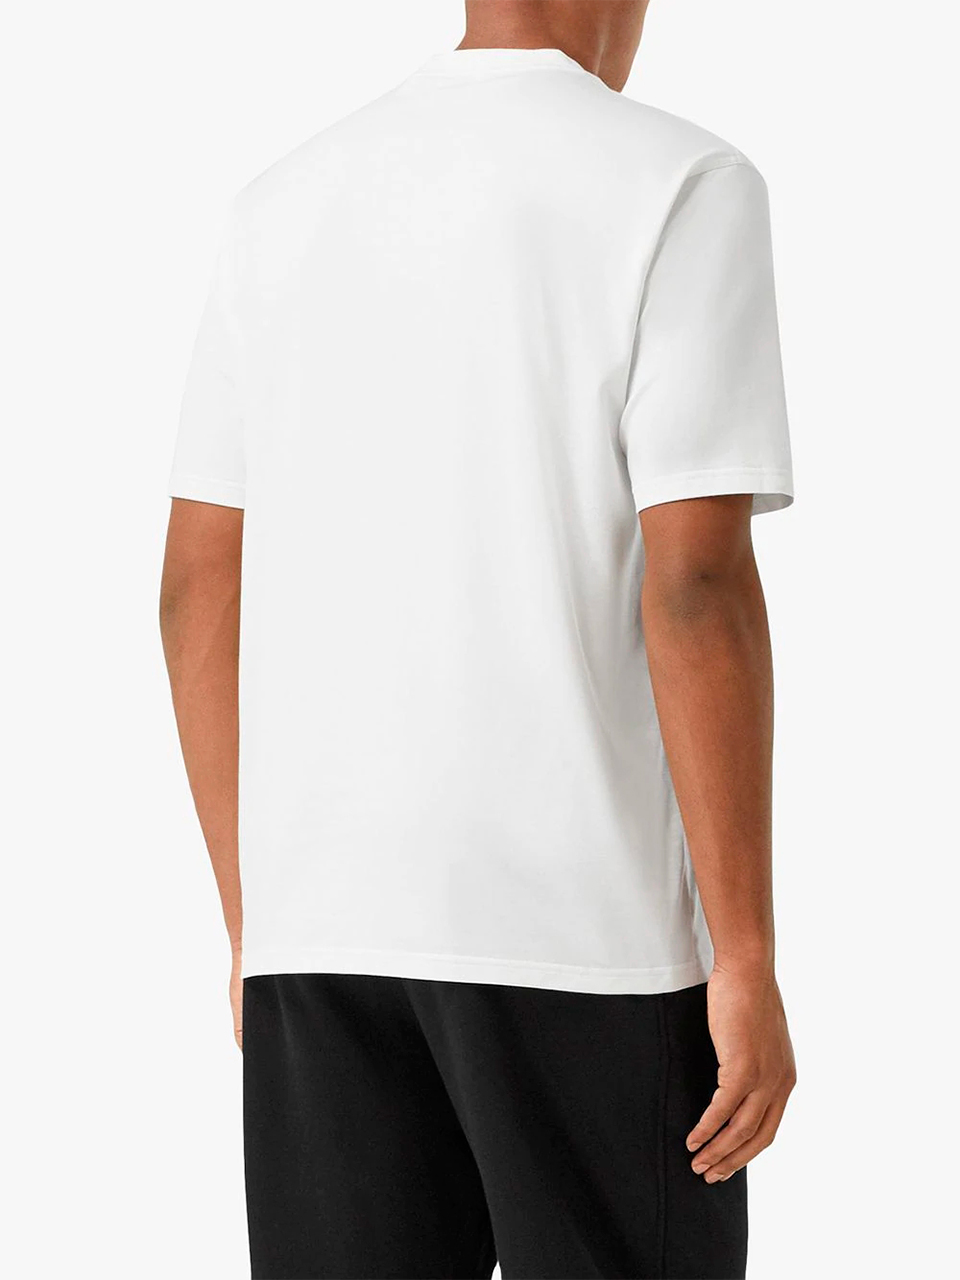 Imagem de: Camiseta Burberry Branca com Estampa